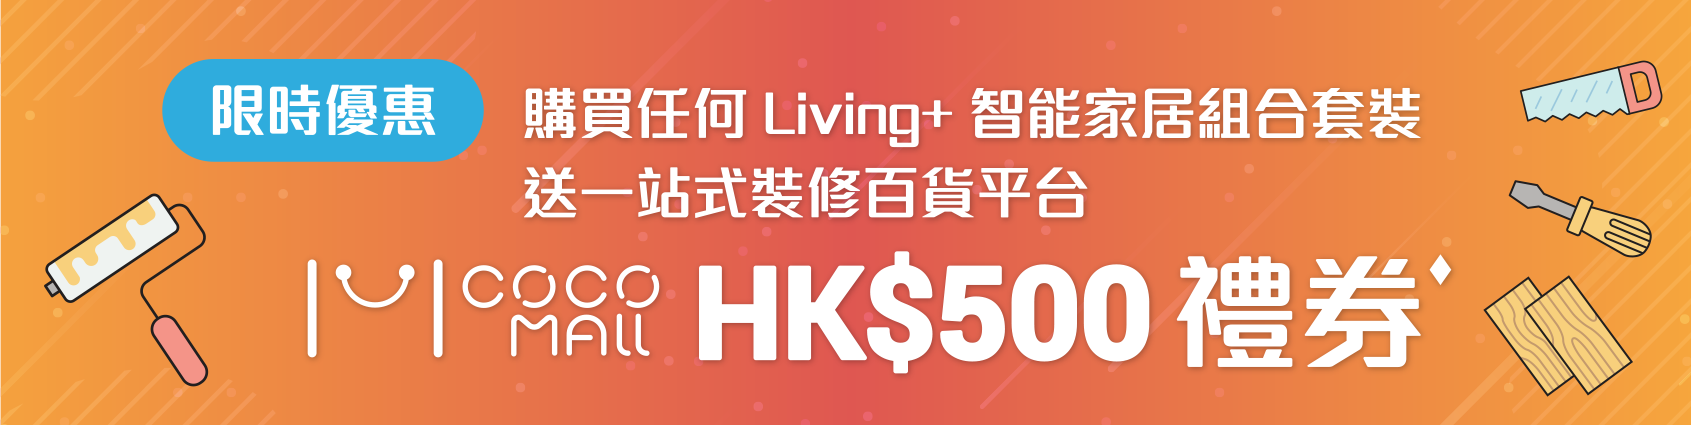 限時優惠 購買任何 Living+ 智能家居組合套裝送一站式裝修百貨平台 COCO MALL HK$500 禮券